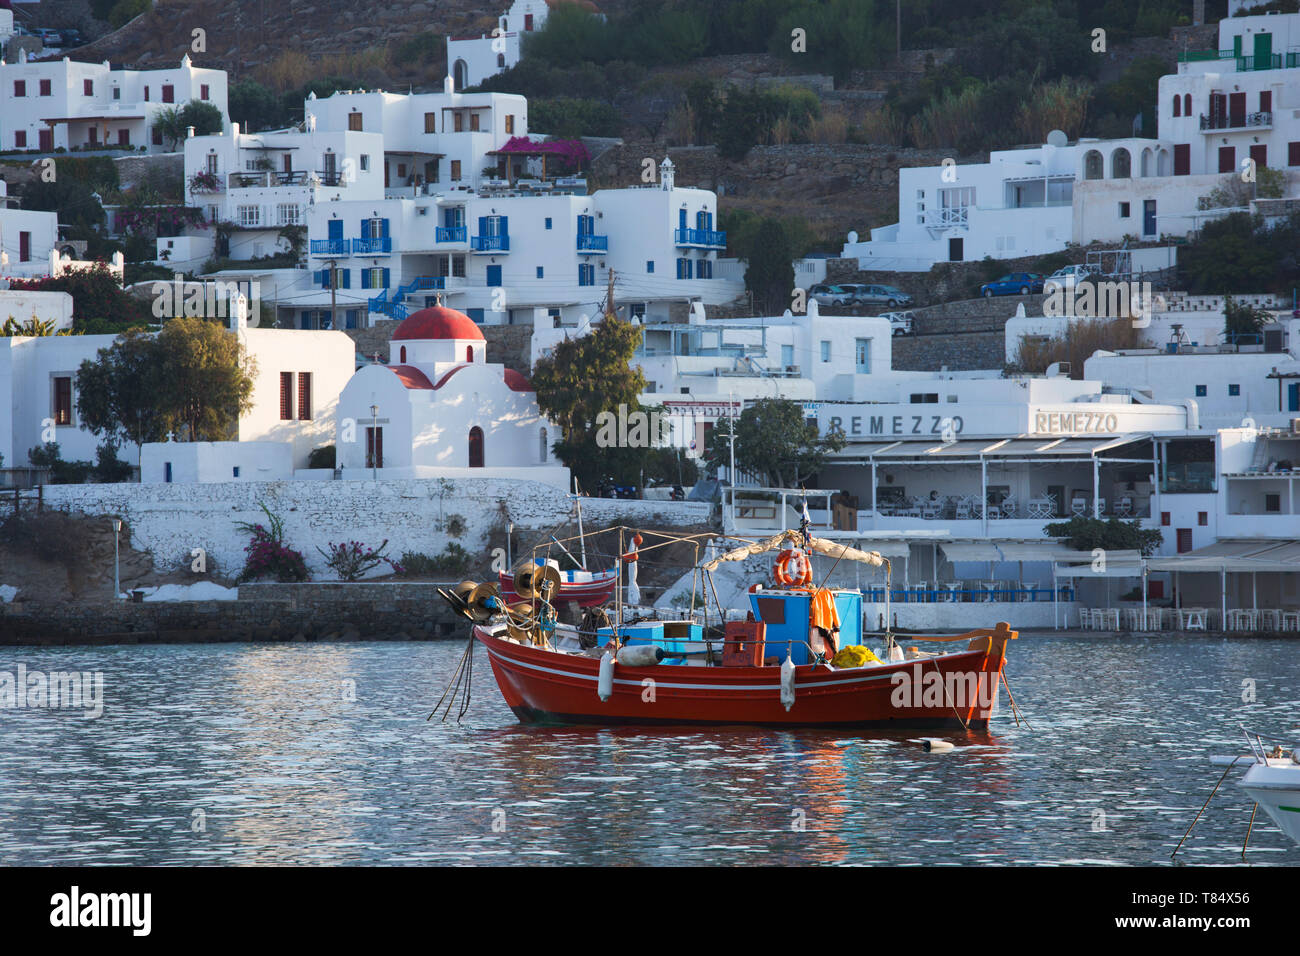 La ville de Mykonos, Mykonos, sud de la mer Egée, en Grèce. Bateau de pêche colorés amarrés dans le port, d'un dôme rouge en arrière-plan. Banque D'Images